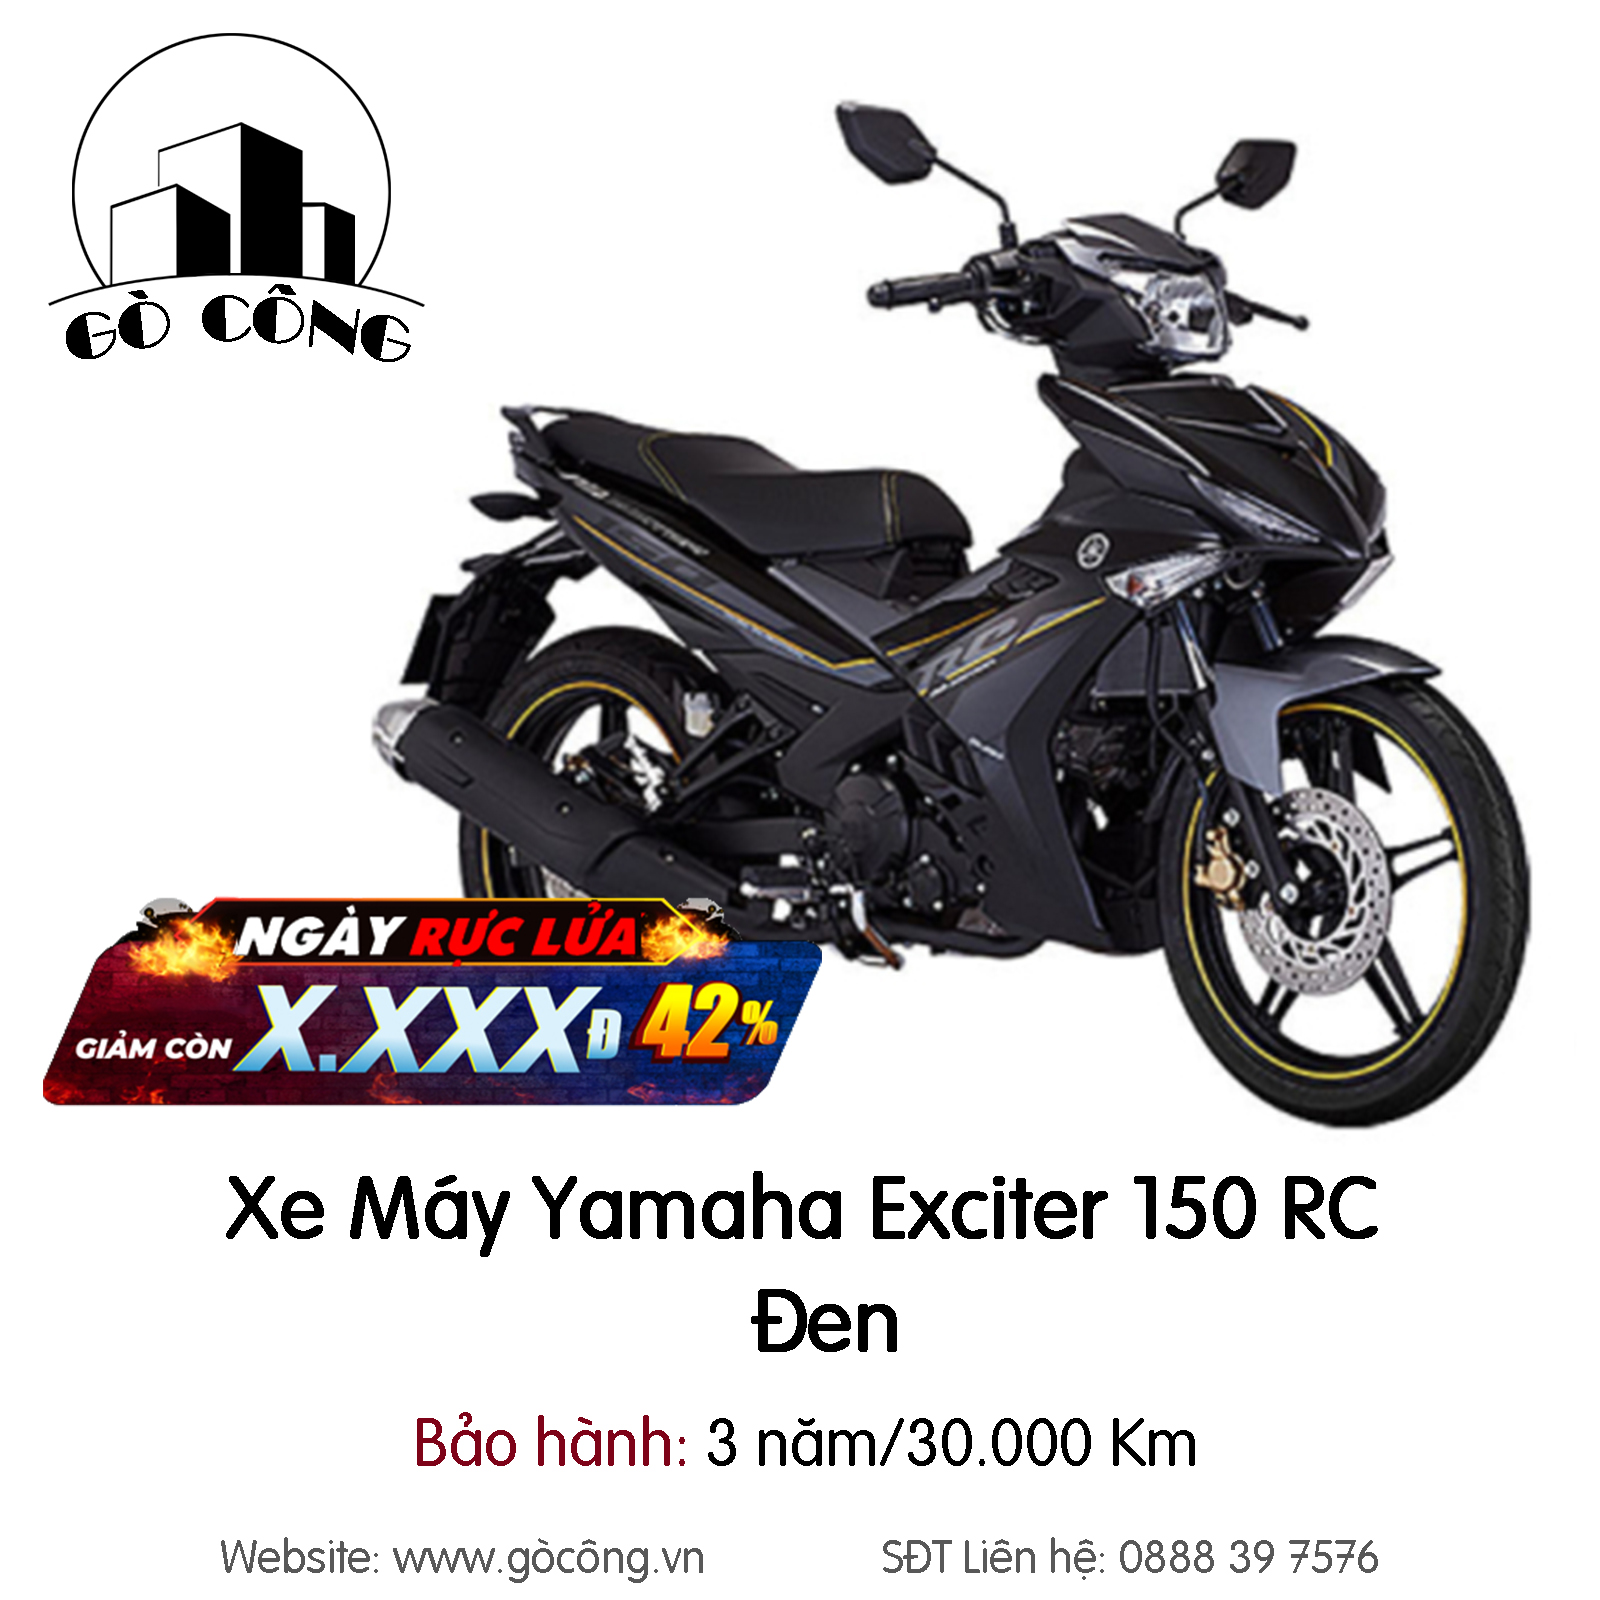 Có những phiên bản Yamaha Exciter 150 2021 nào Giá bán bao nhiêu tiền   websosanhvn